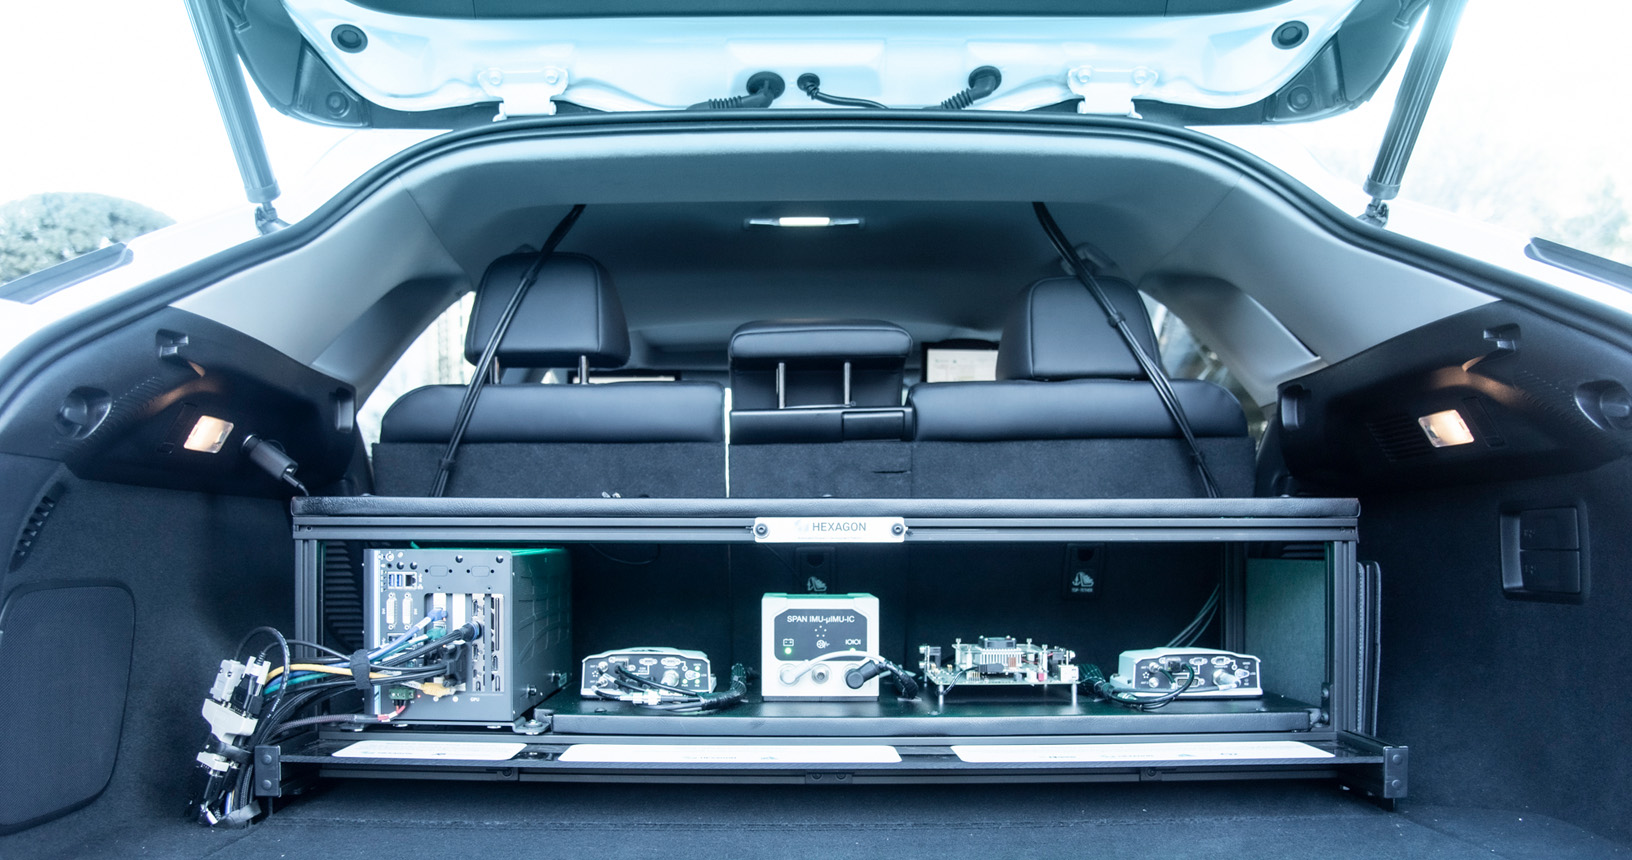 Porta-malas aberto de um carro Lexus exibindo vários equipamentos para permitir a operação autônoma.